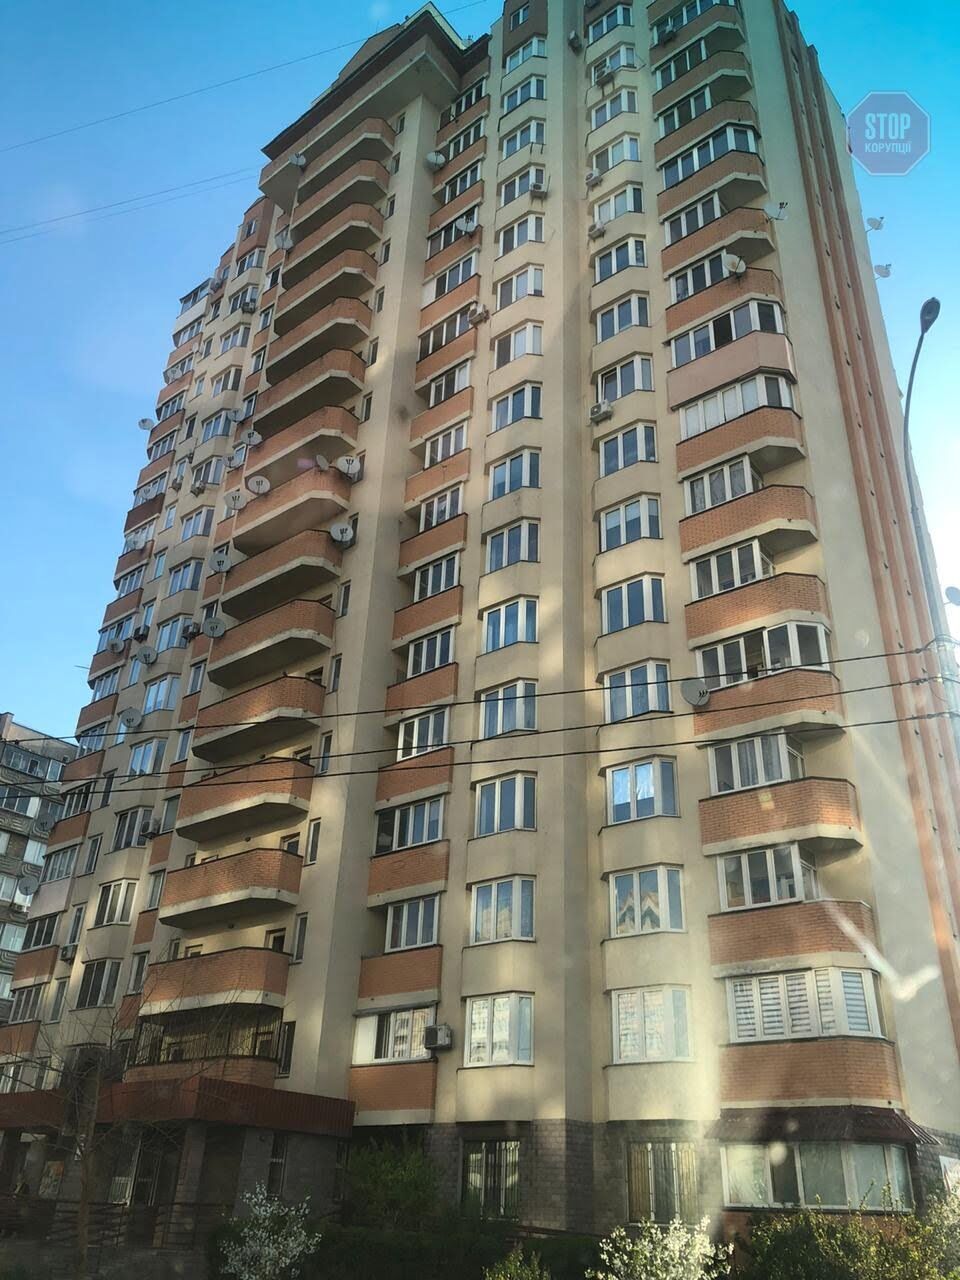  Будинок по вулиці Алматинській, де живе Валерія